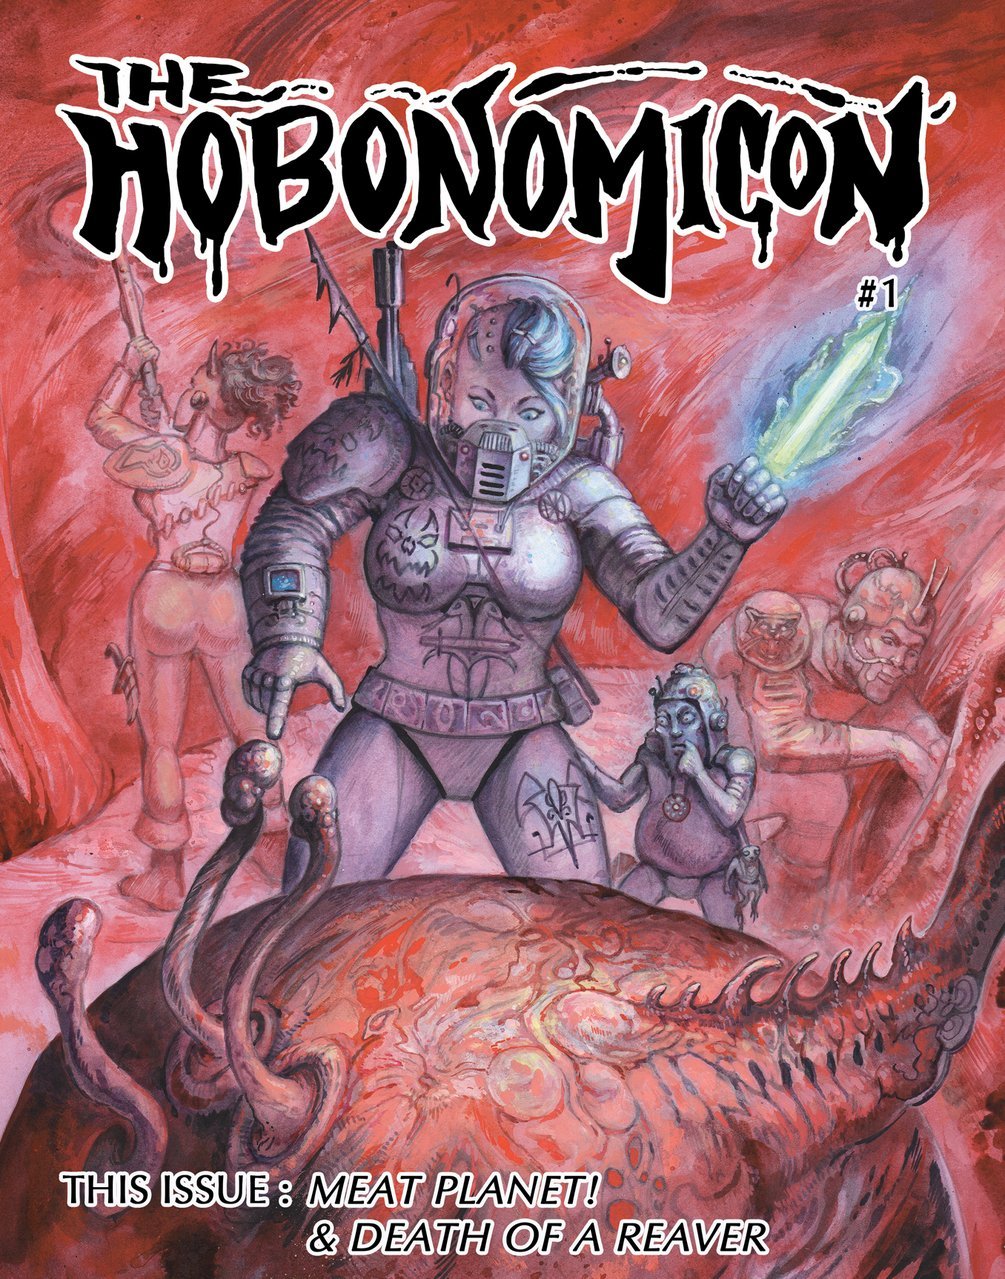 Hobonomicon #1